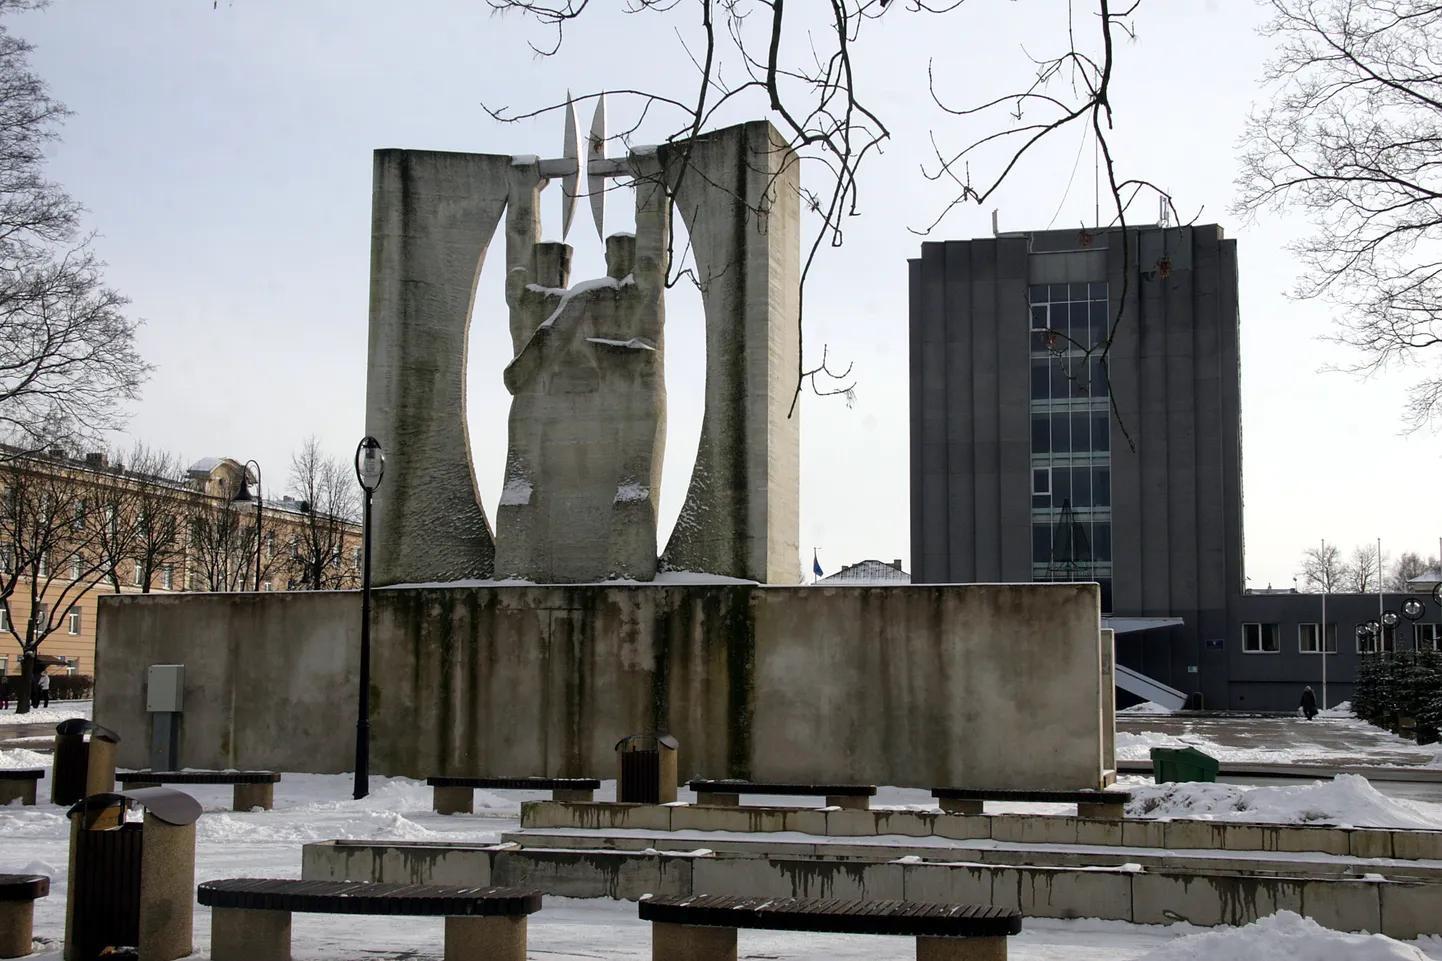 Kohtla-Järve poliitilise võitluse peaareen - hall maja, millele vaatavad otsa monumendi "Au tööle" kaks kaevurit.